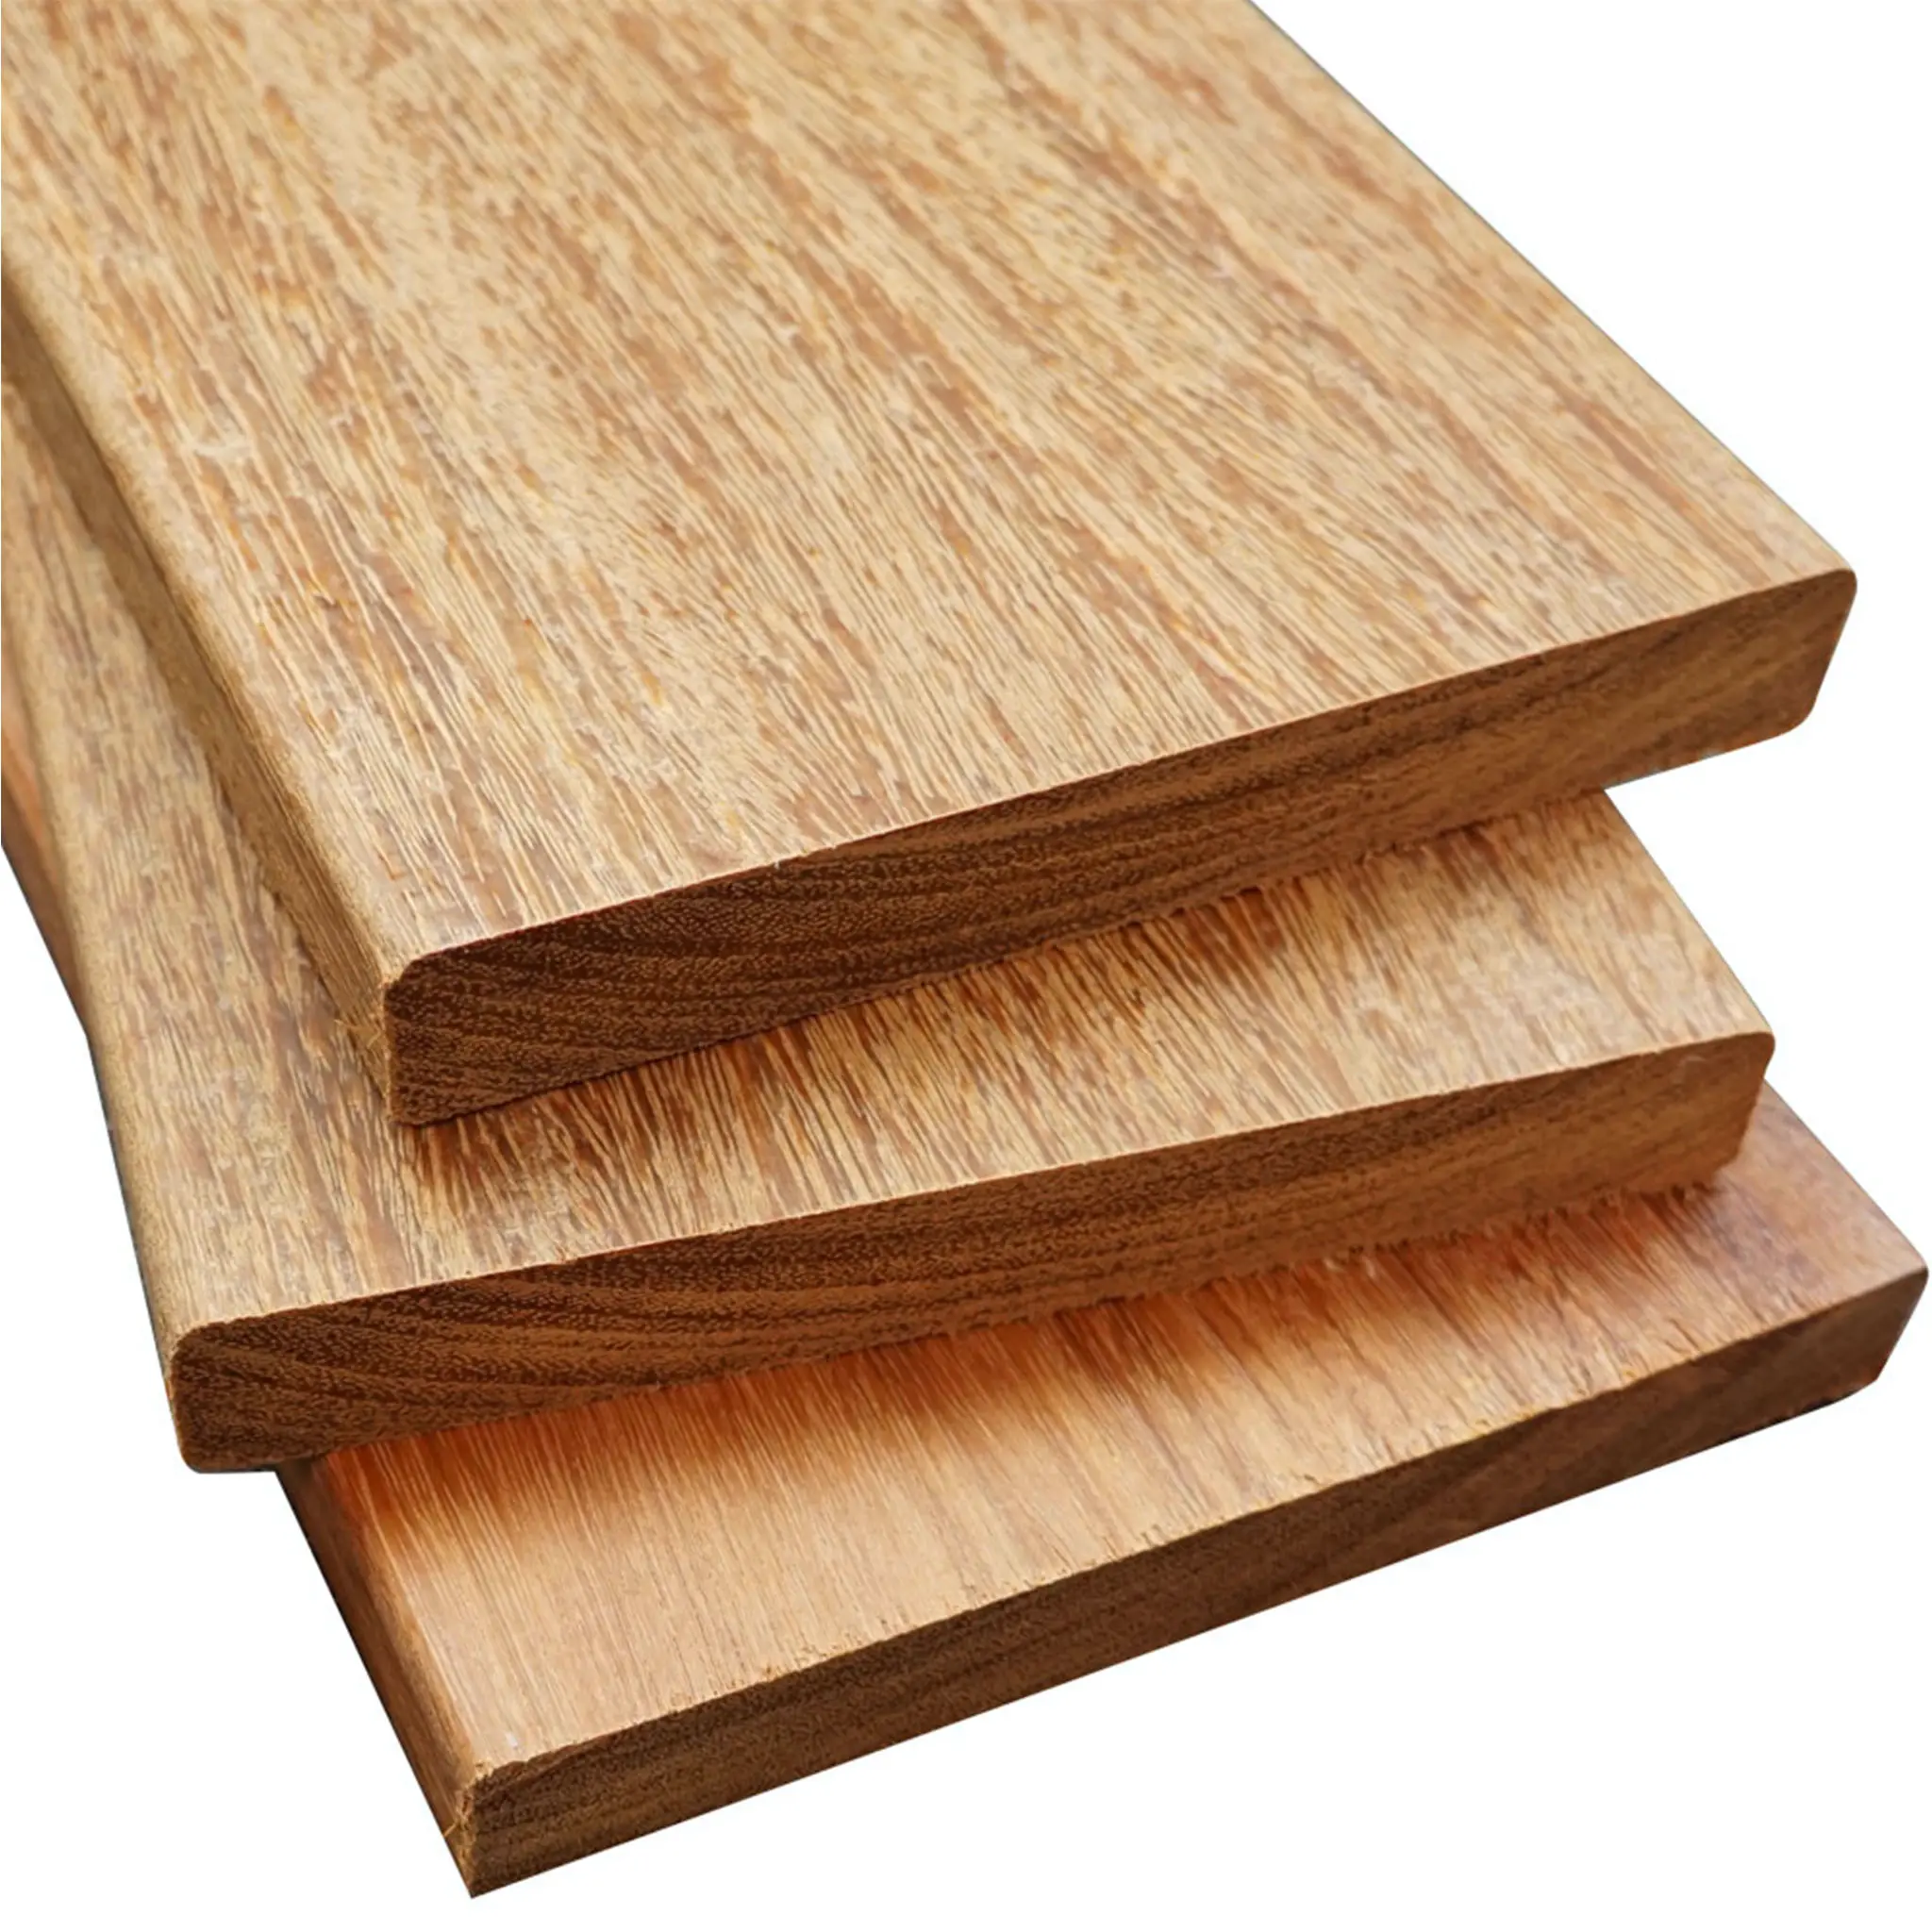 Cumaru Hardwood Decking Benefits